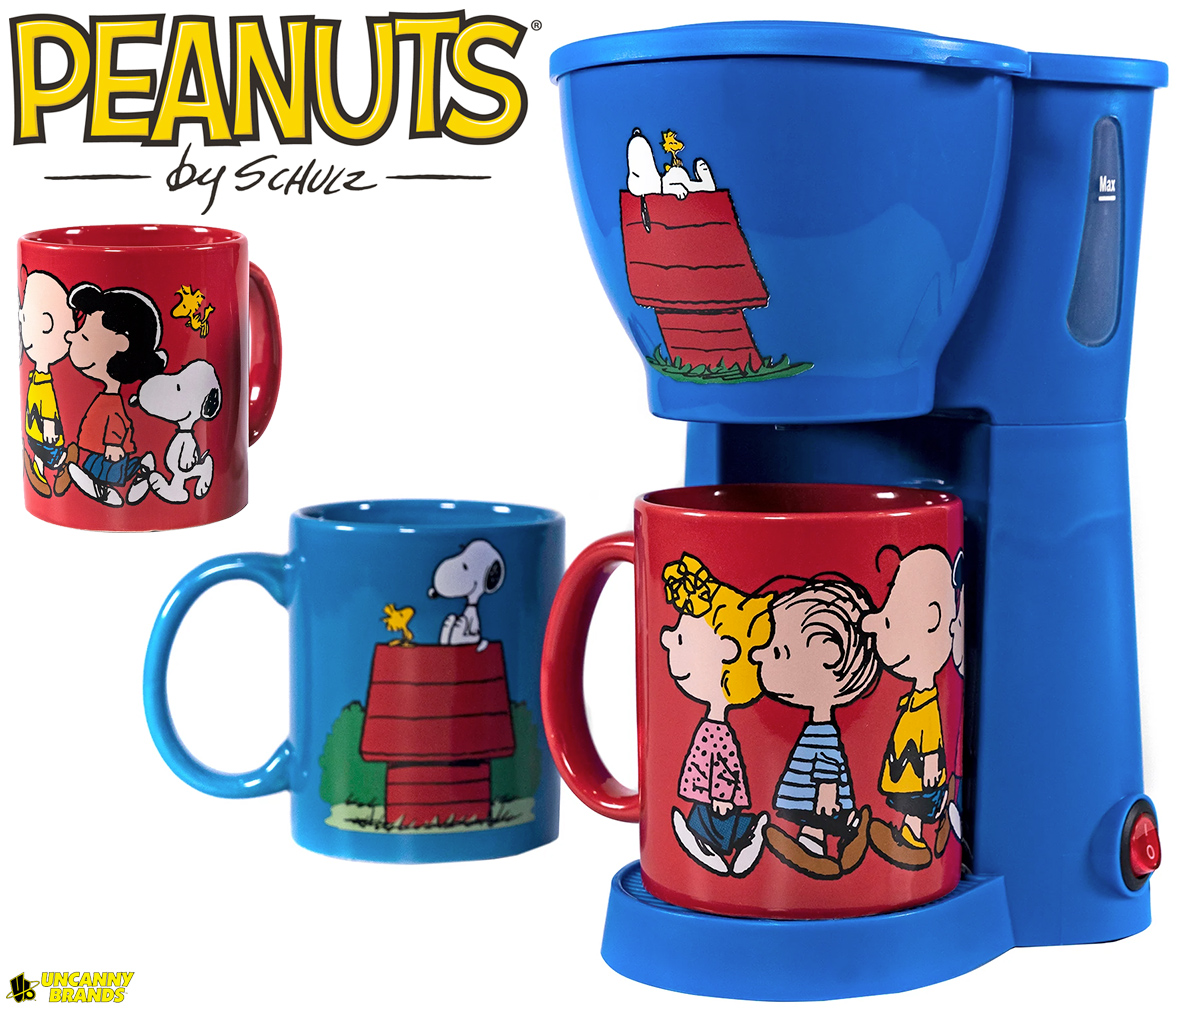 Cafeteira Peanuts com Snoopy, Charlie Brown e a Turma Toda